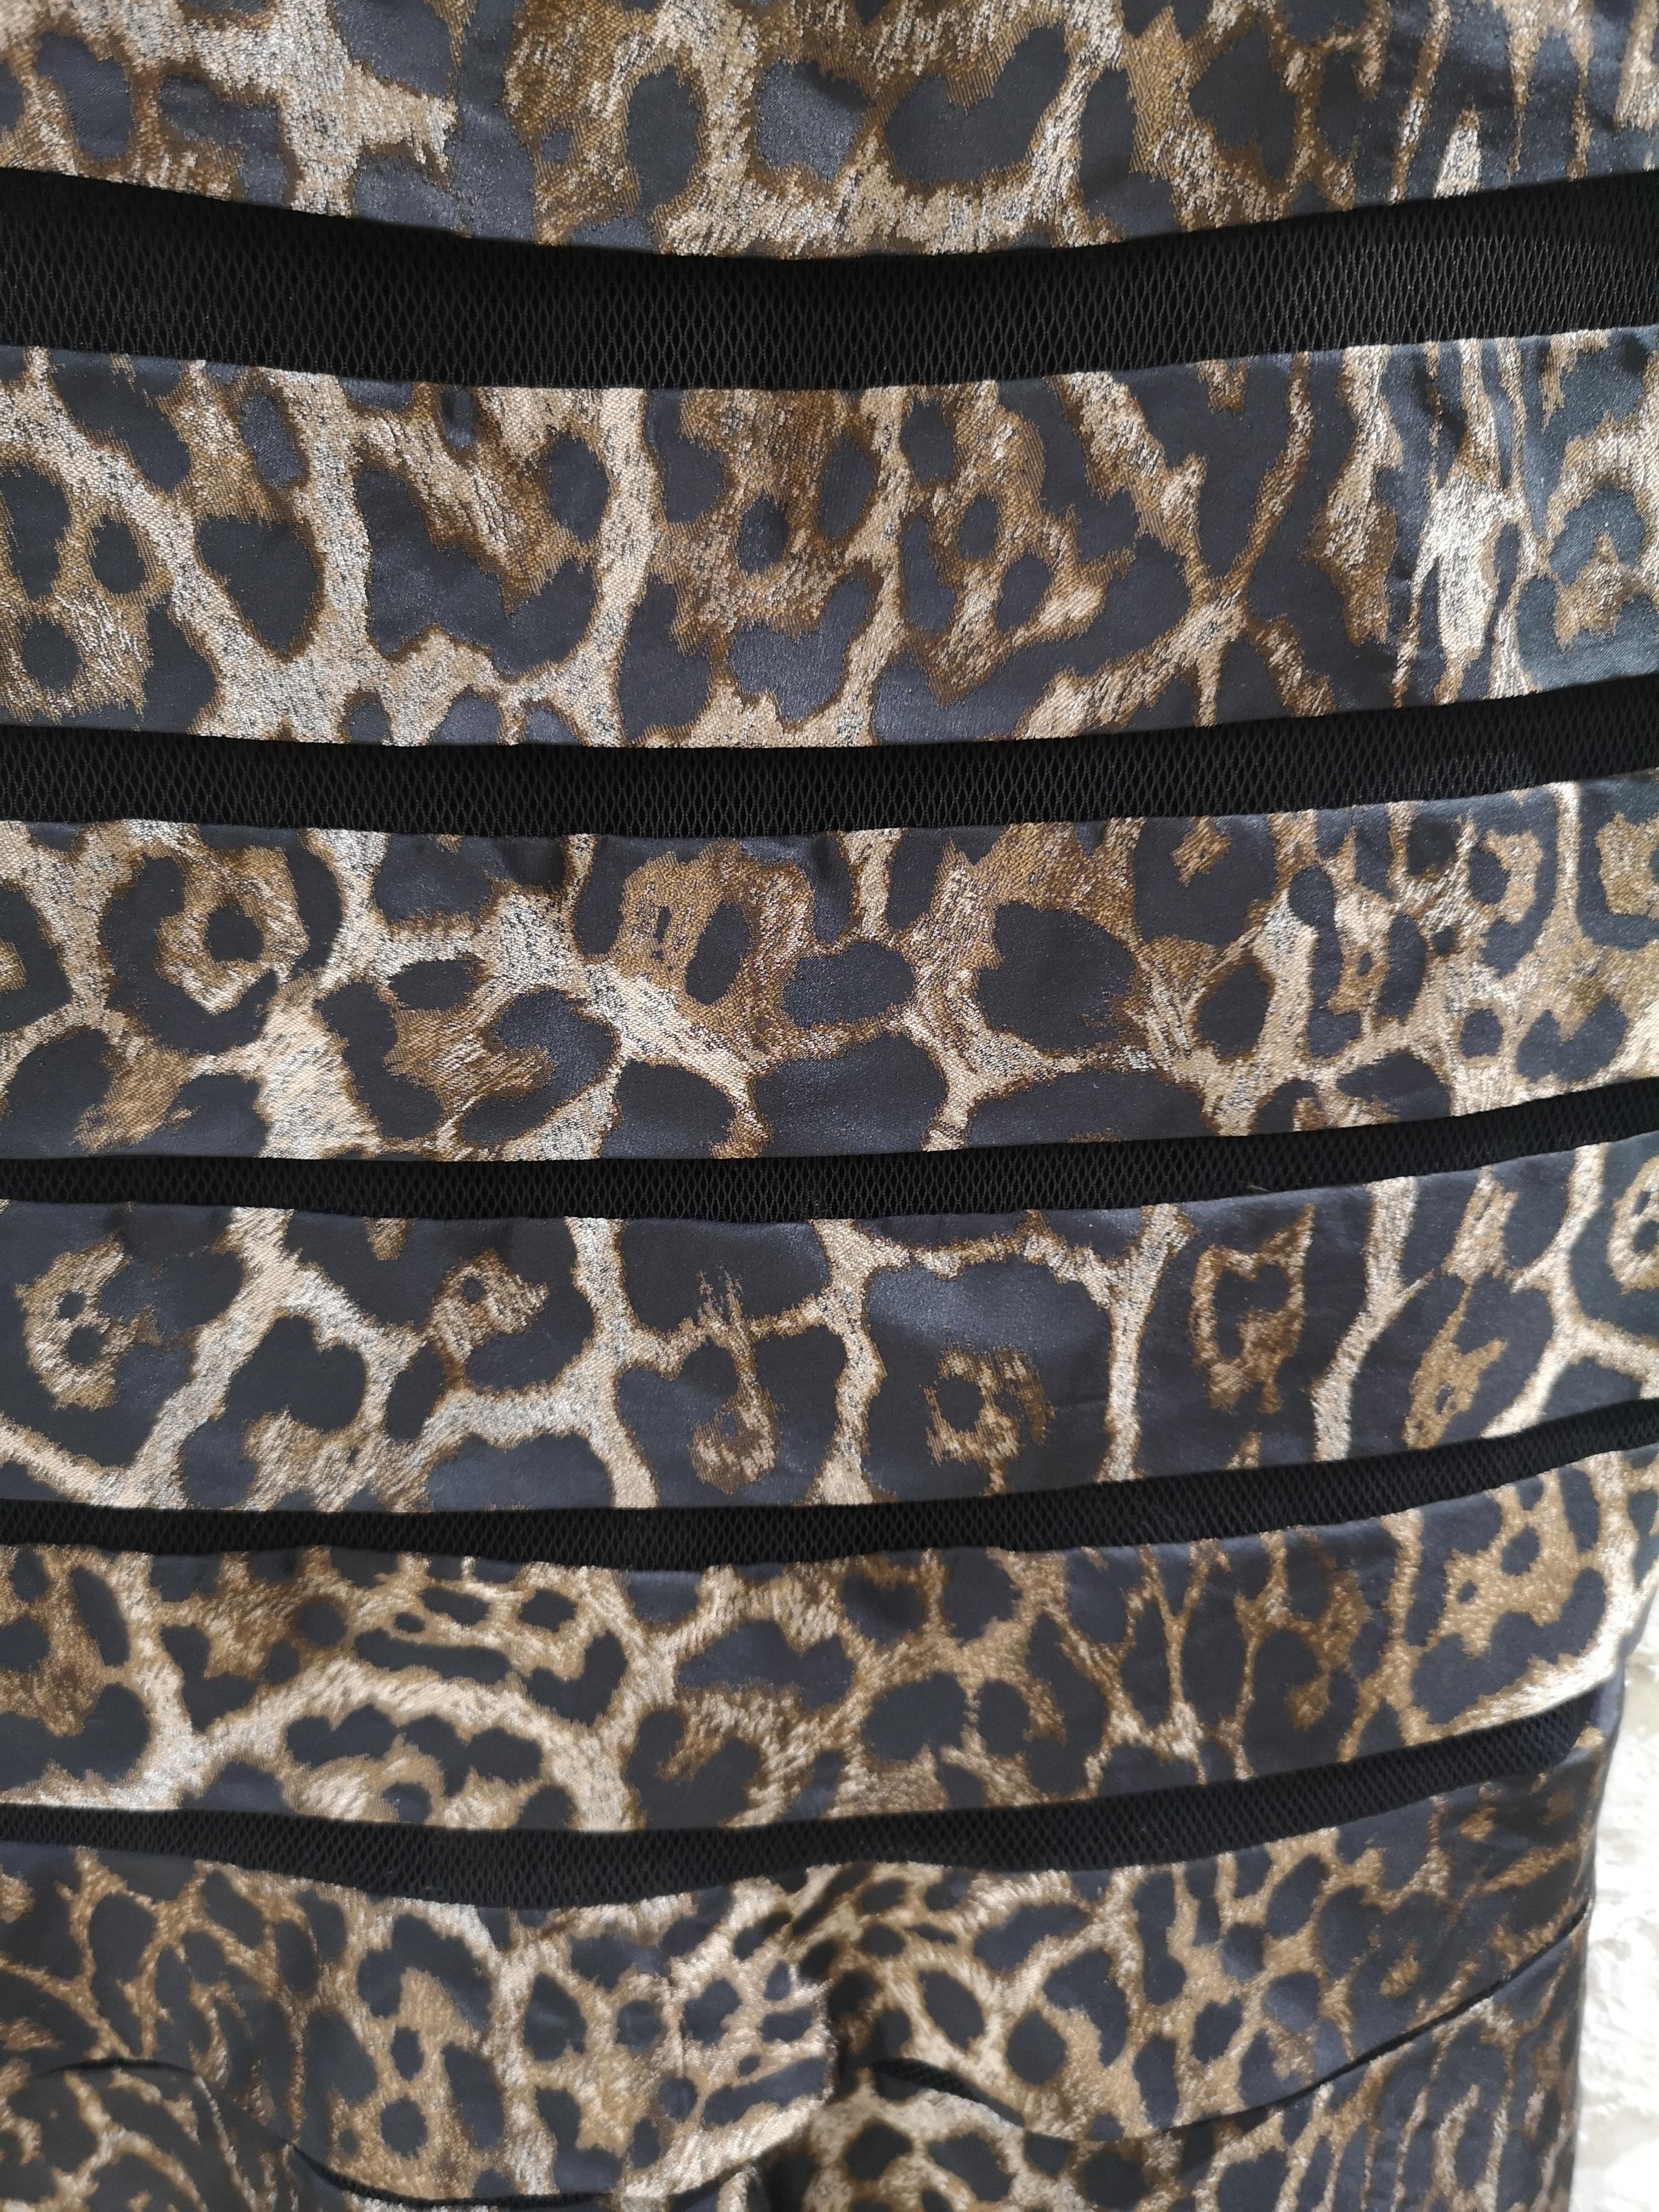 Black Gianfranco Ferrè cheetah see through skirt